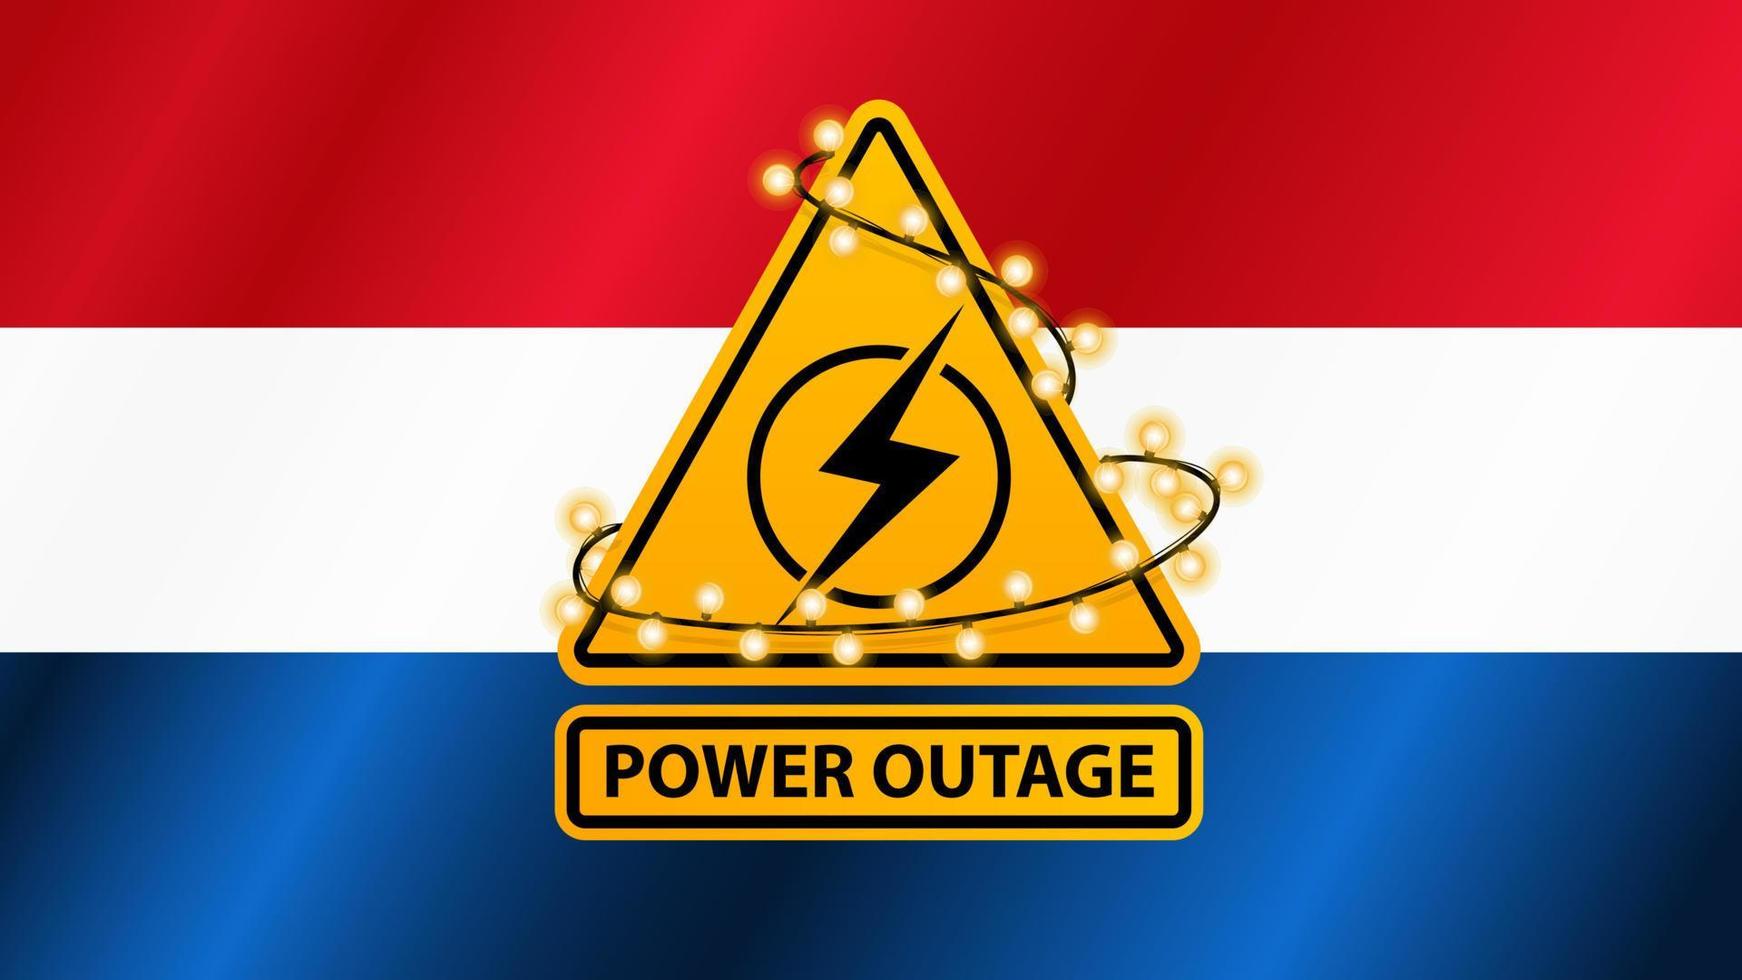 stroomstoring, geel waarschuwingsbord omwikkeld met slinger op de achtergrond van de vlag van nederland vector